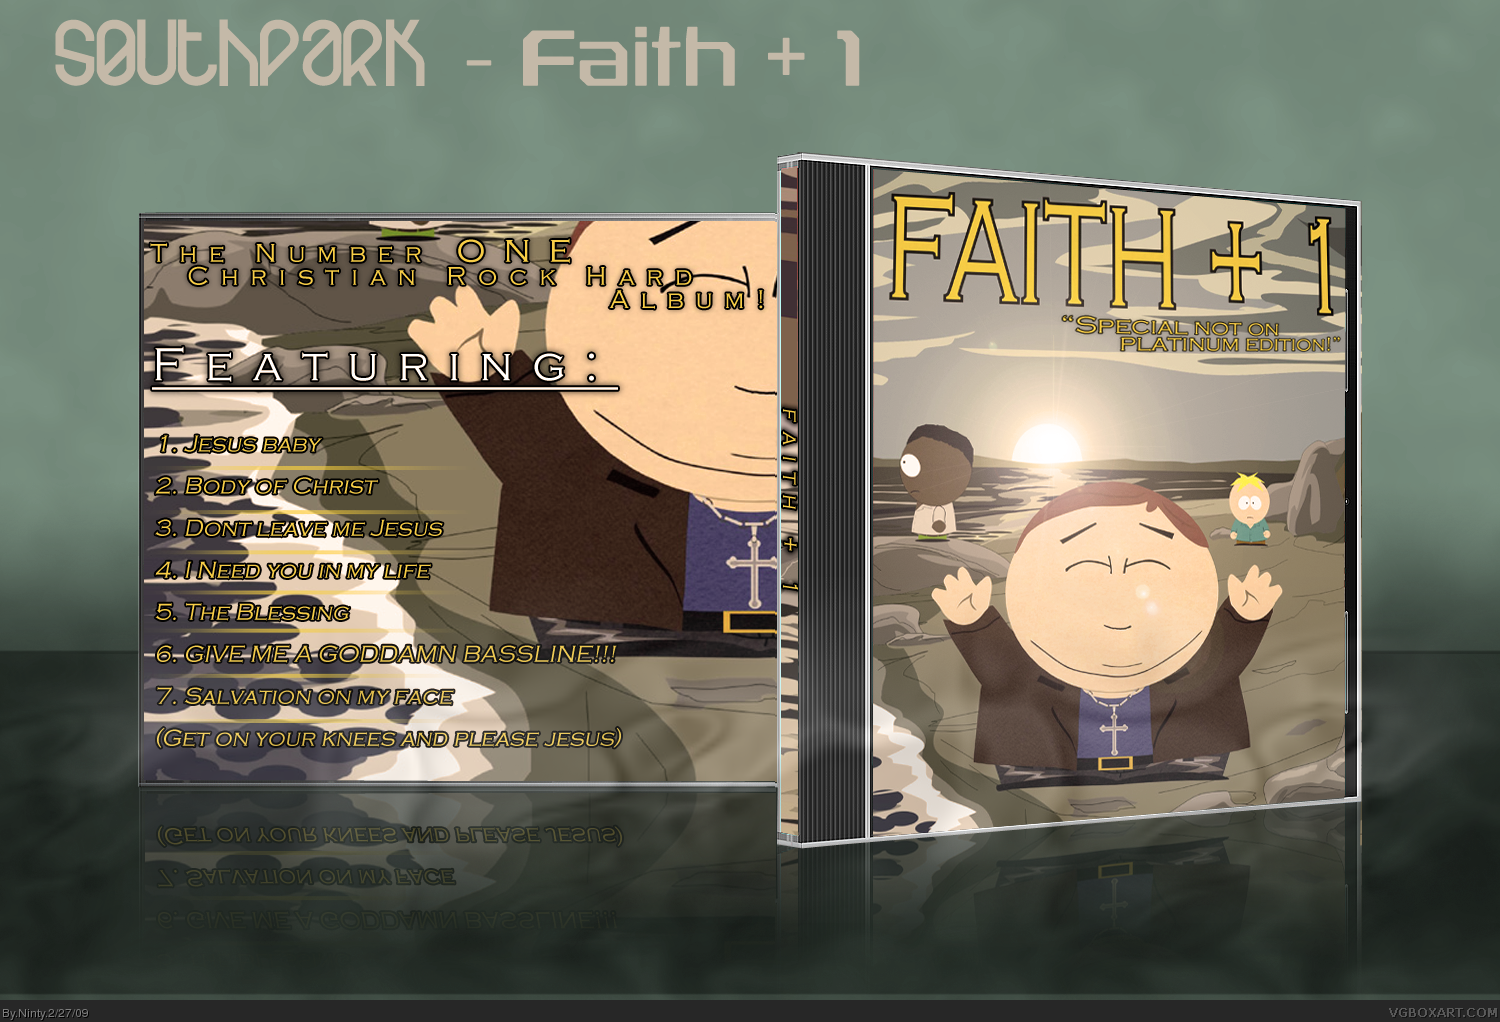 SouthPark: Faith + 1 box cover